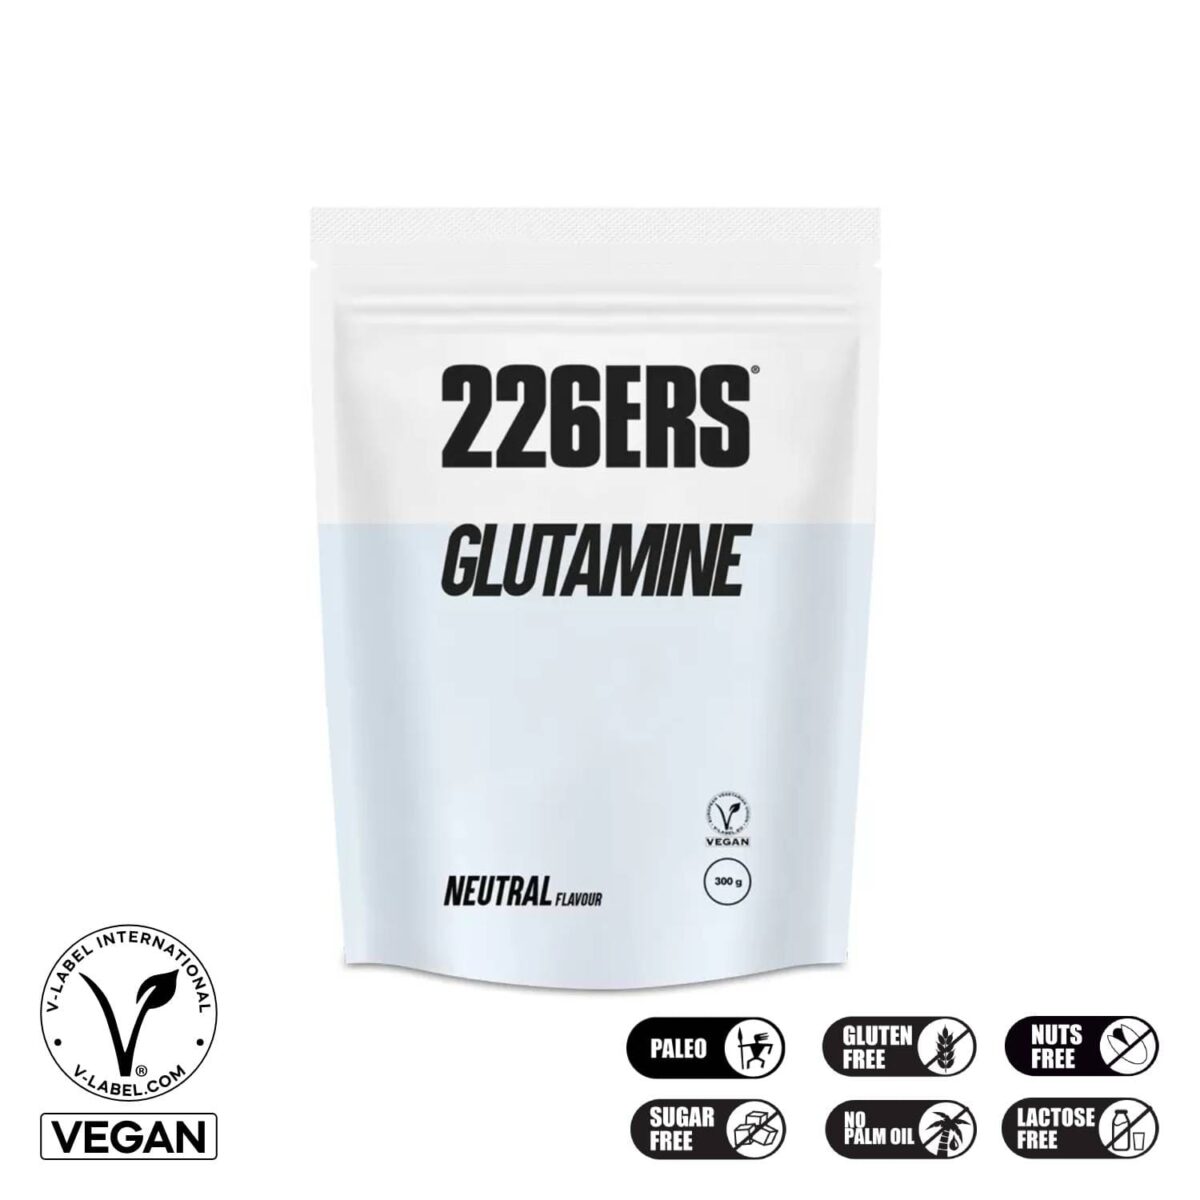 226ers Glutamine Vegan